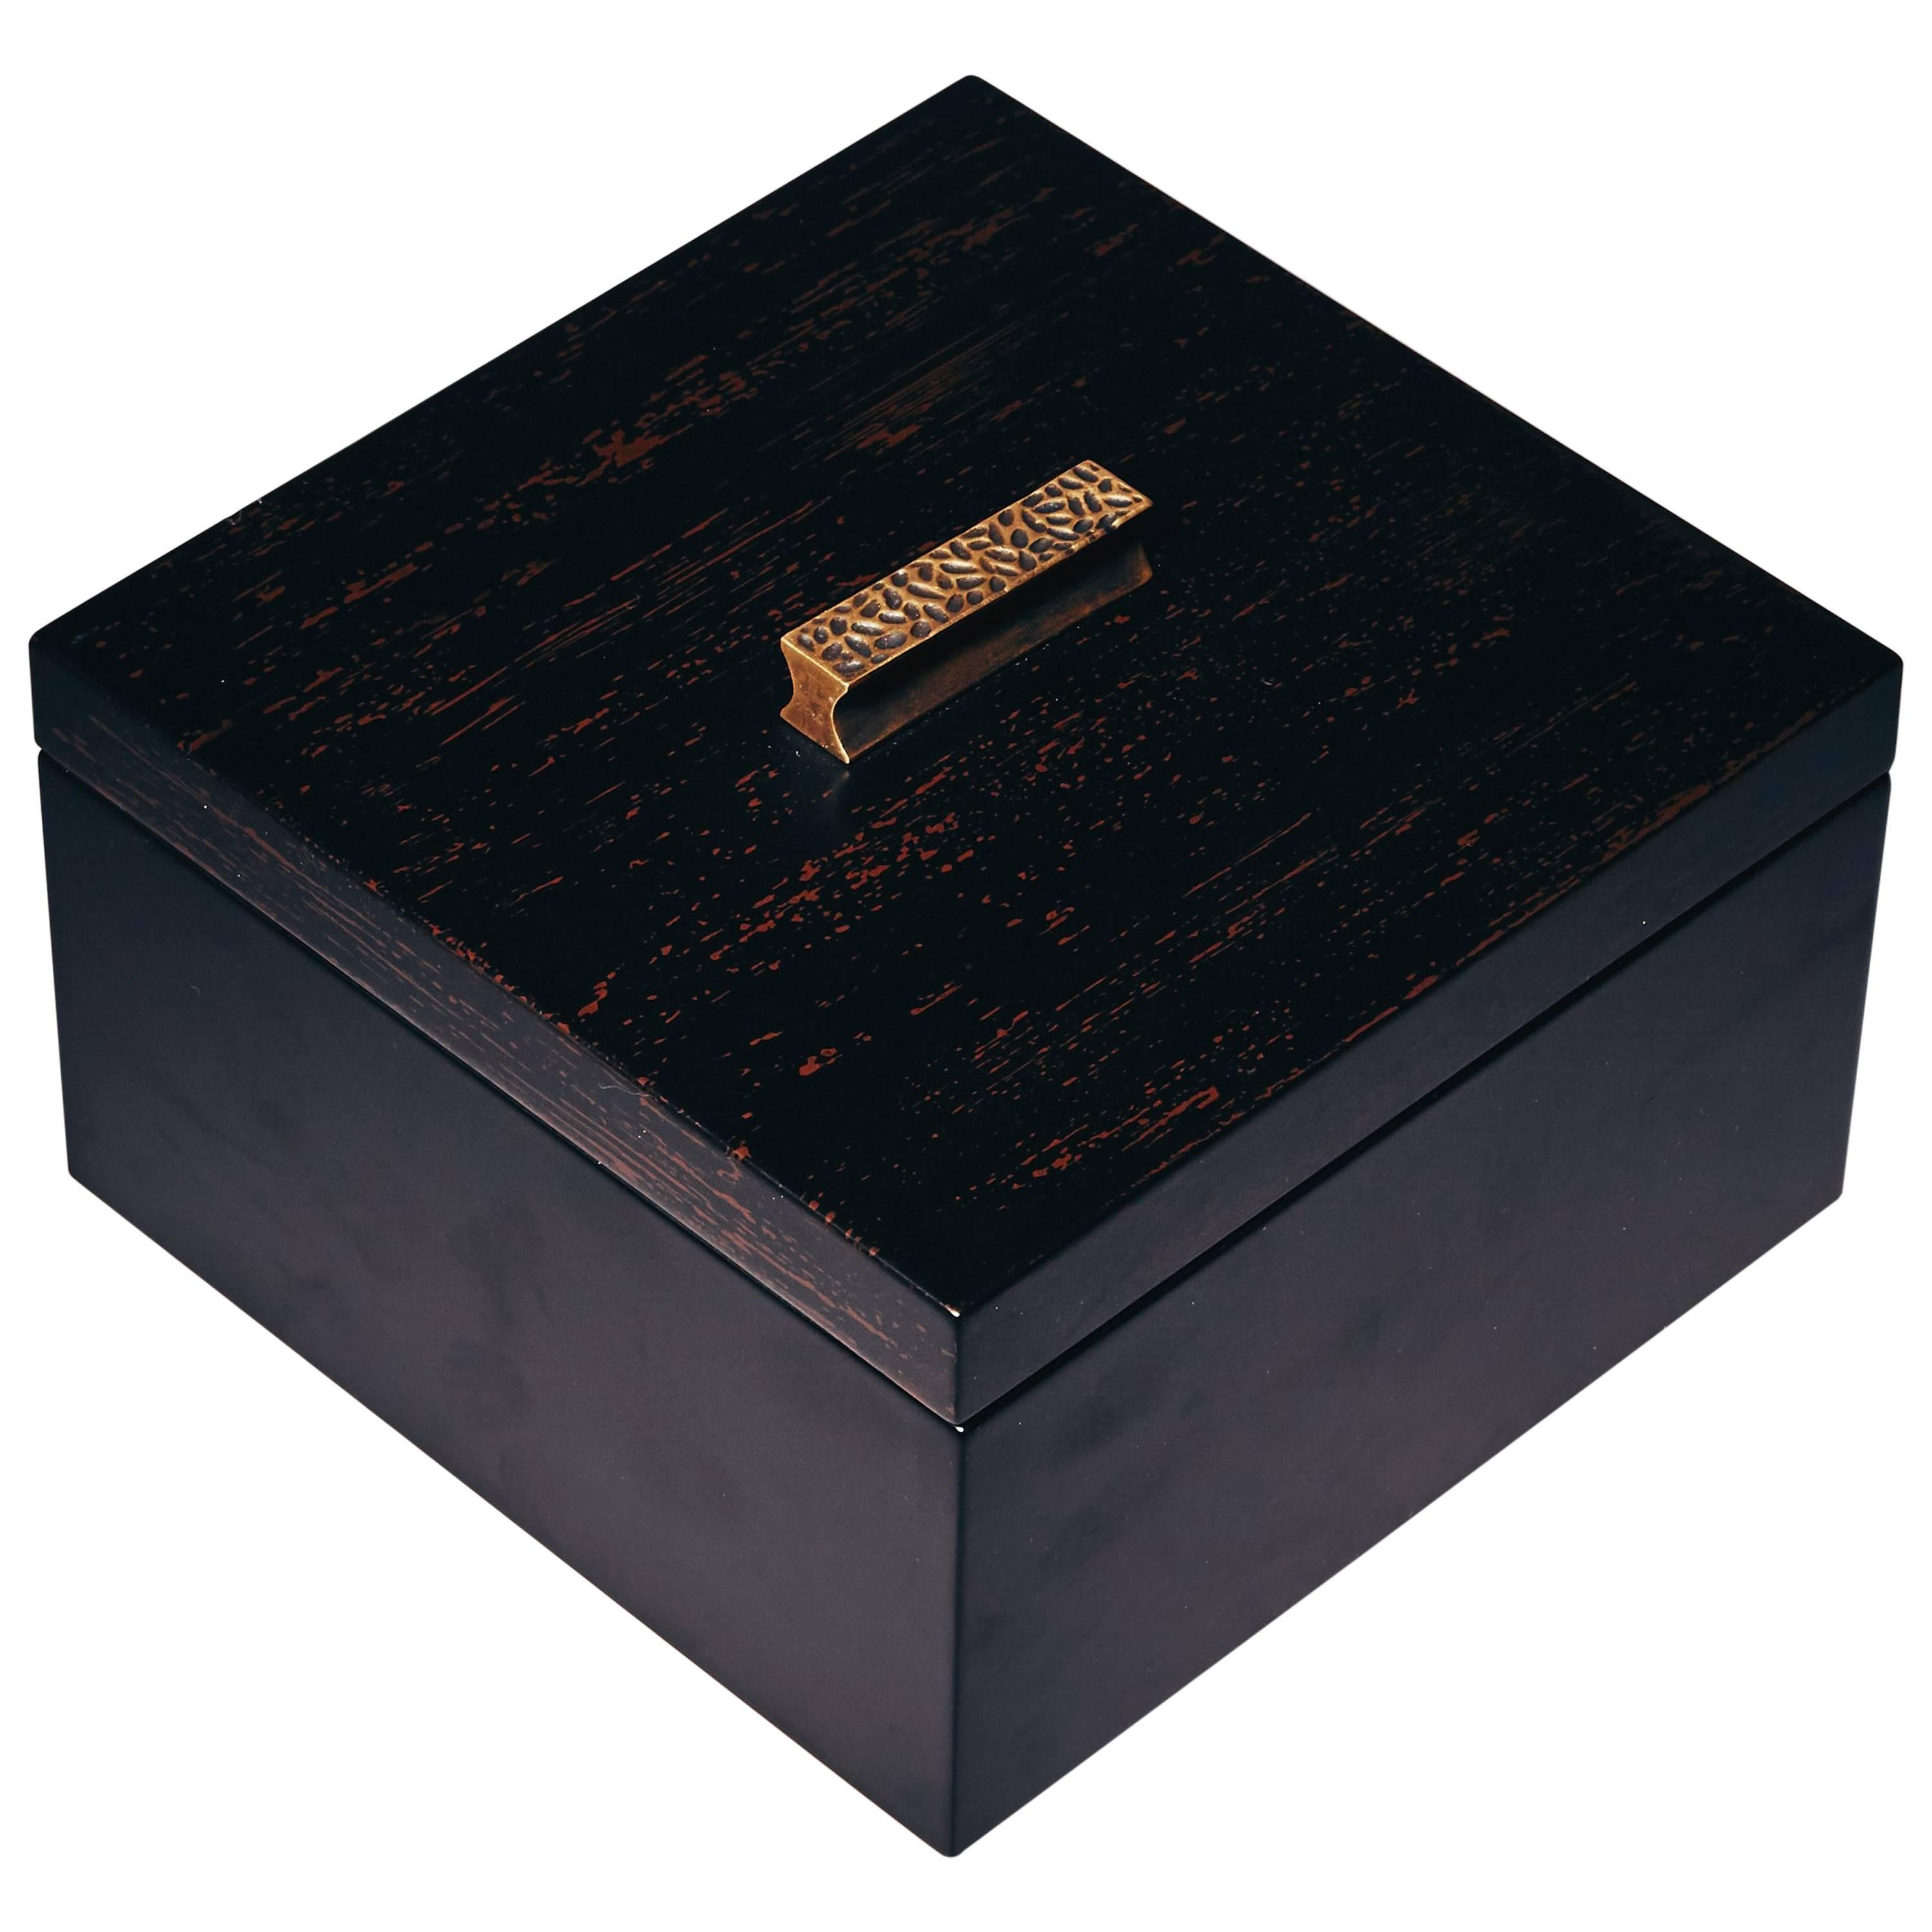 Dekorative Schachteln, ELLA von Reda Amalou Design, 2016 – schwarzer und brauner Lack